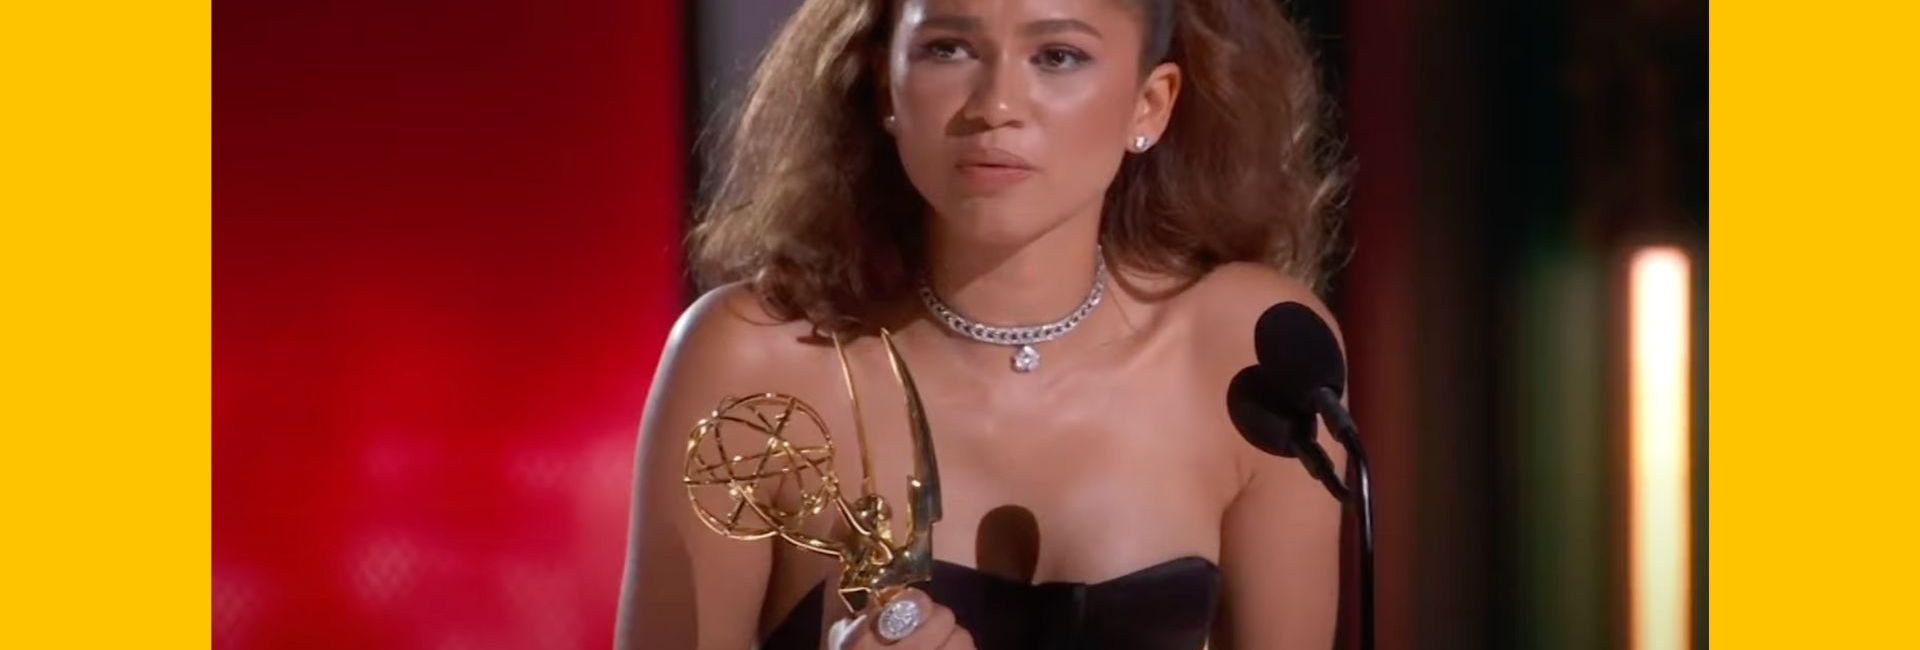 Zendaya Coleman, primée aux Emmys pour Euphoria, fait un discours sur l’addiction